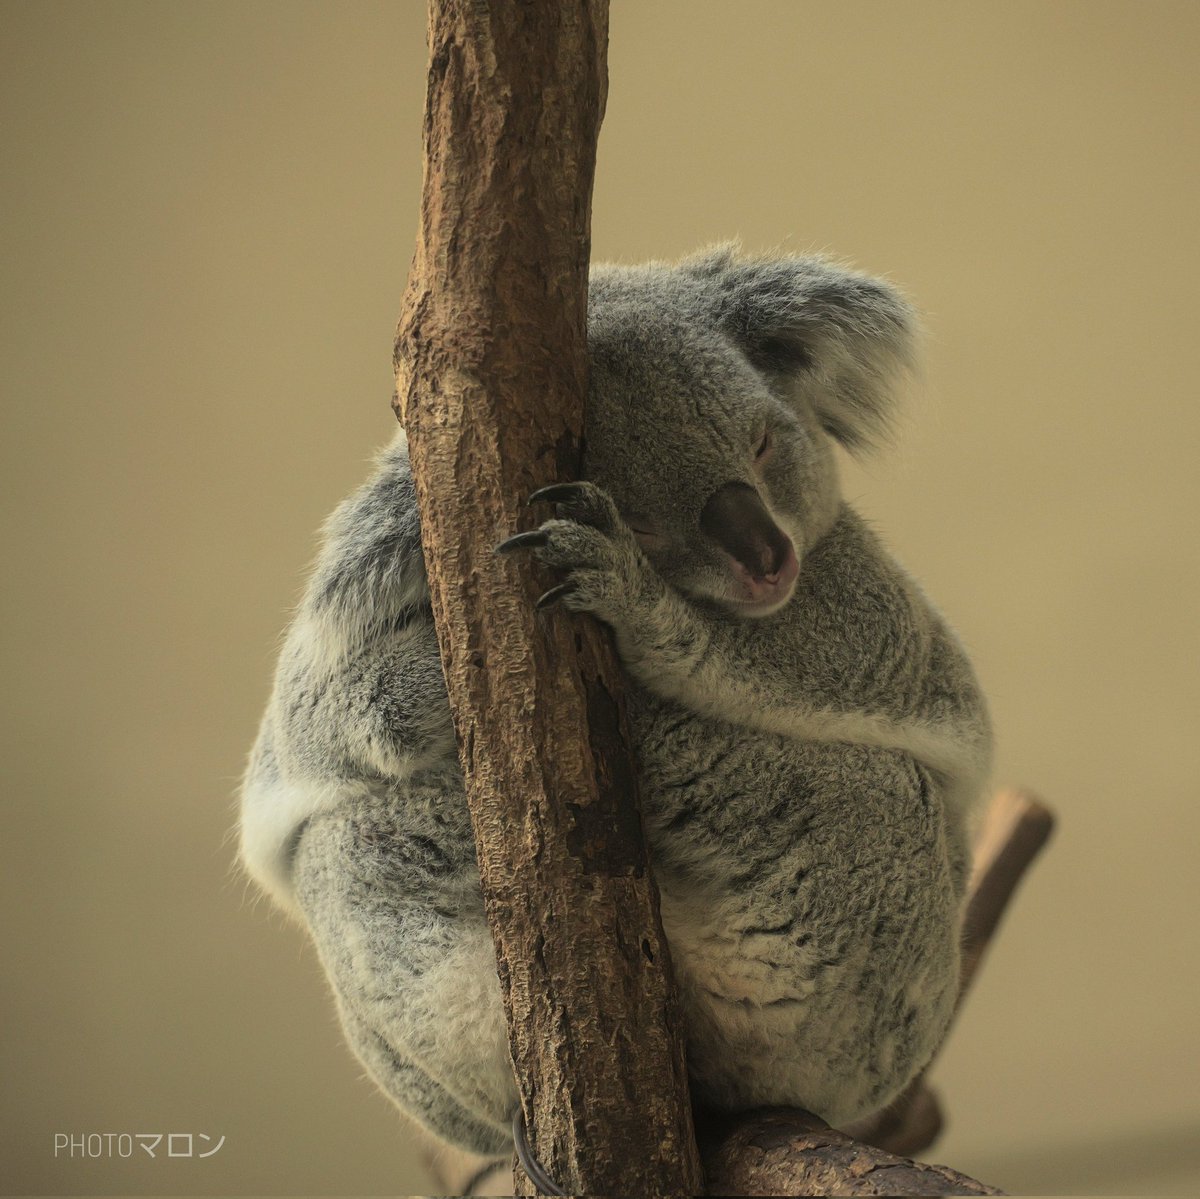 眠いです💤が、おはようございます🐨
#コアラ #koala
#多摩動物公園
#LUMIX  #LUMIXS5II 
#lumixjapan